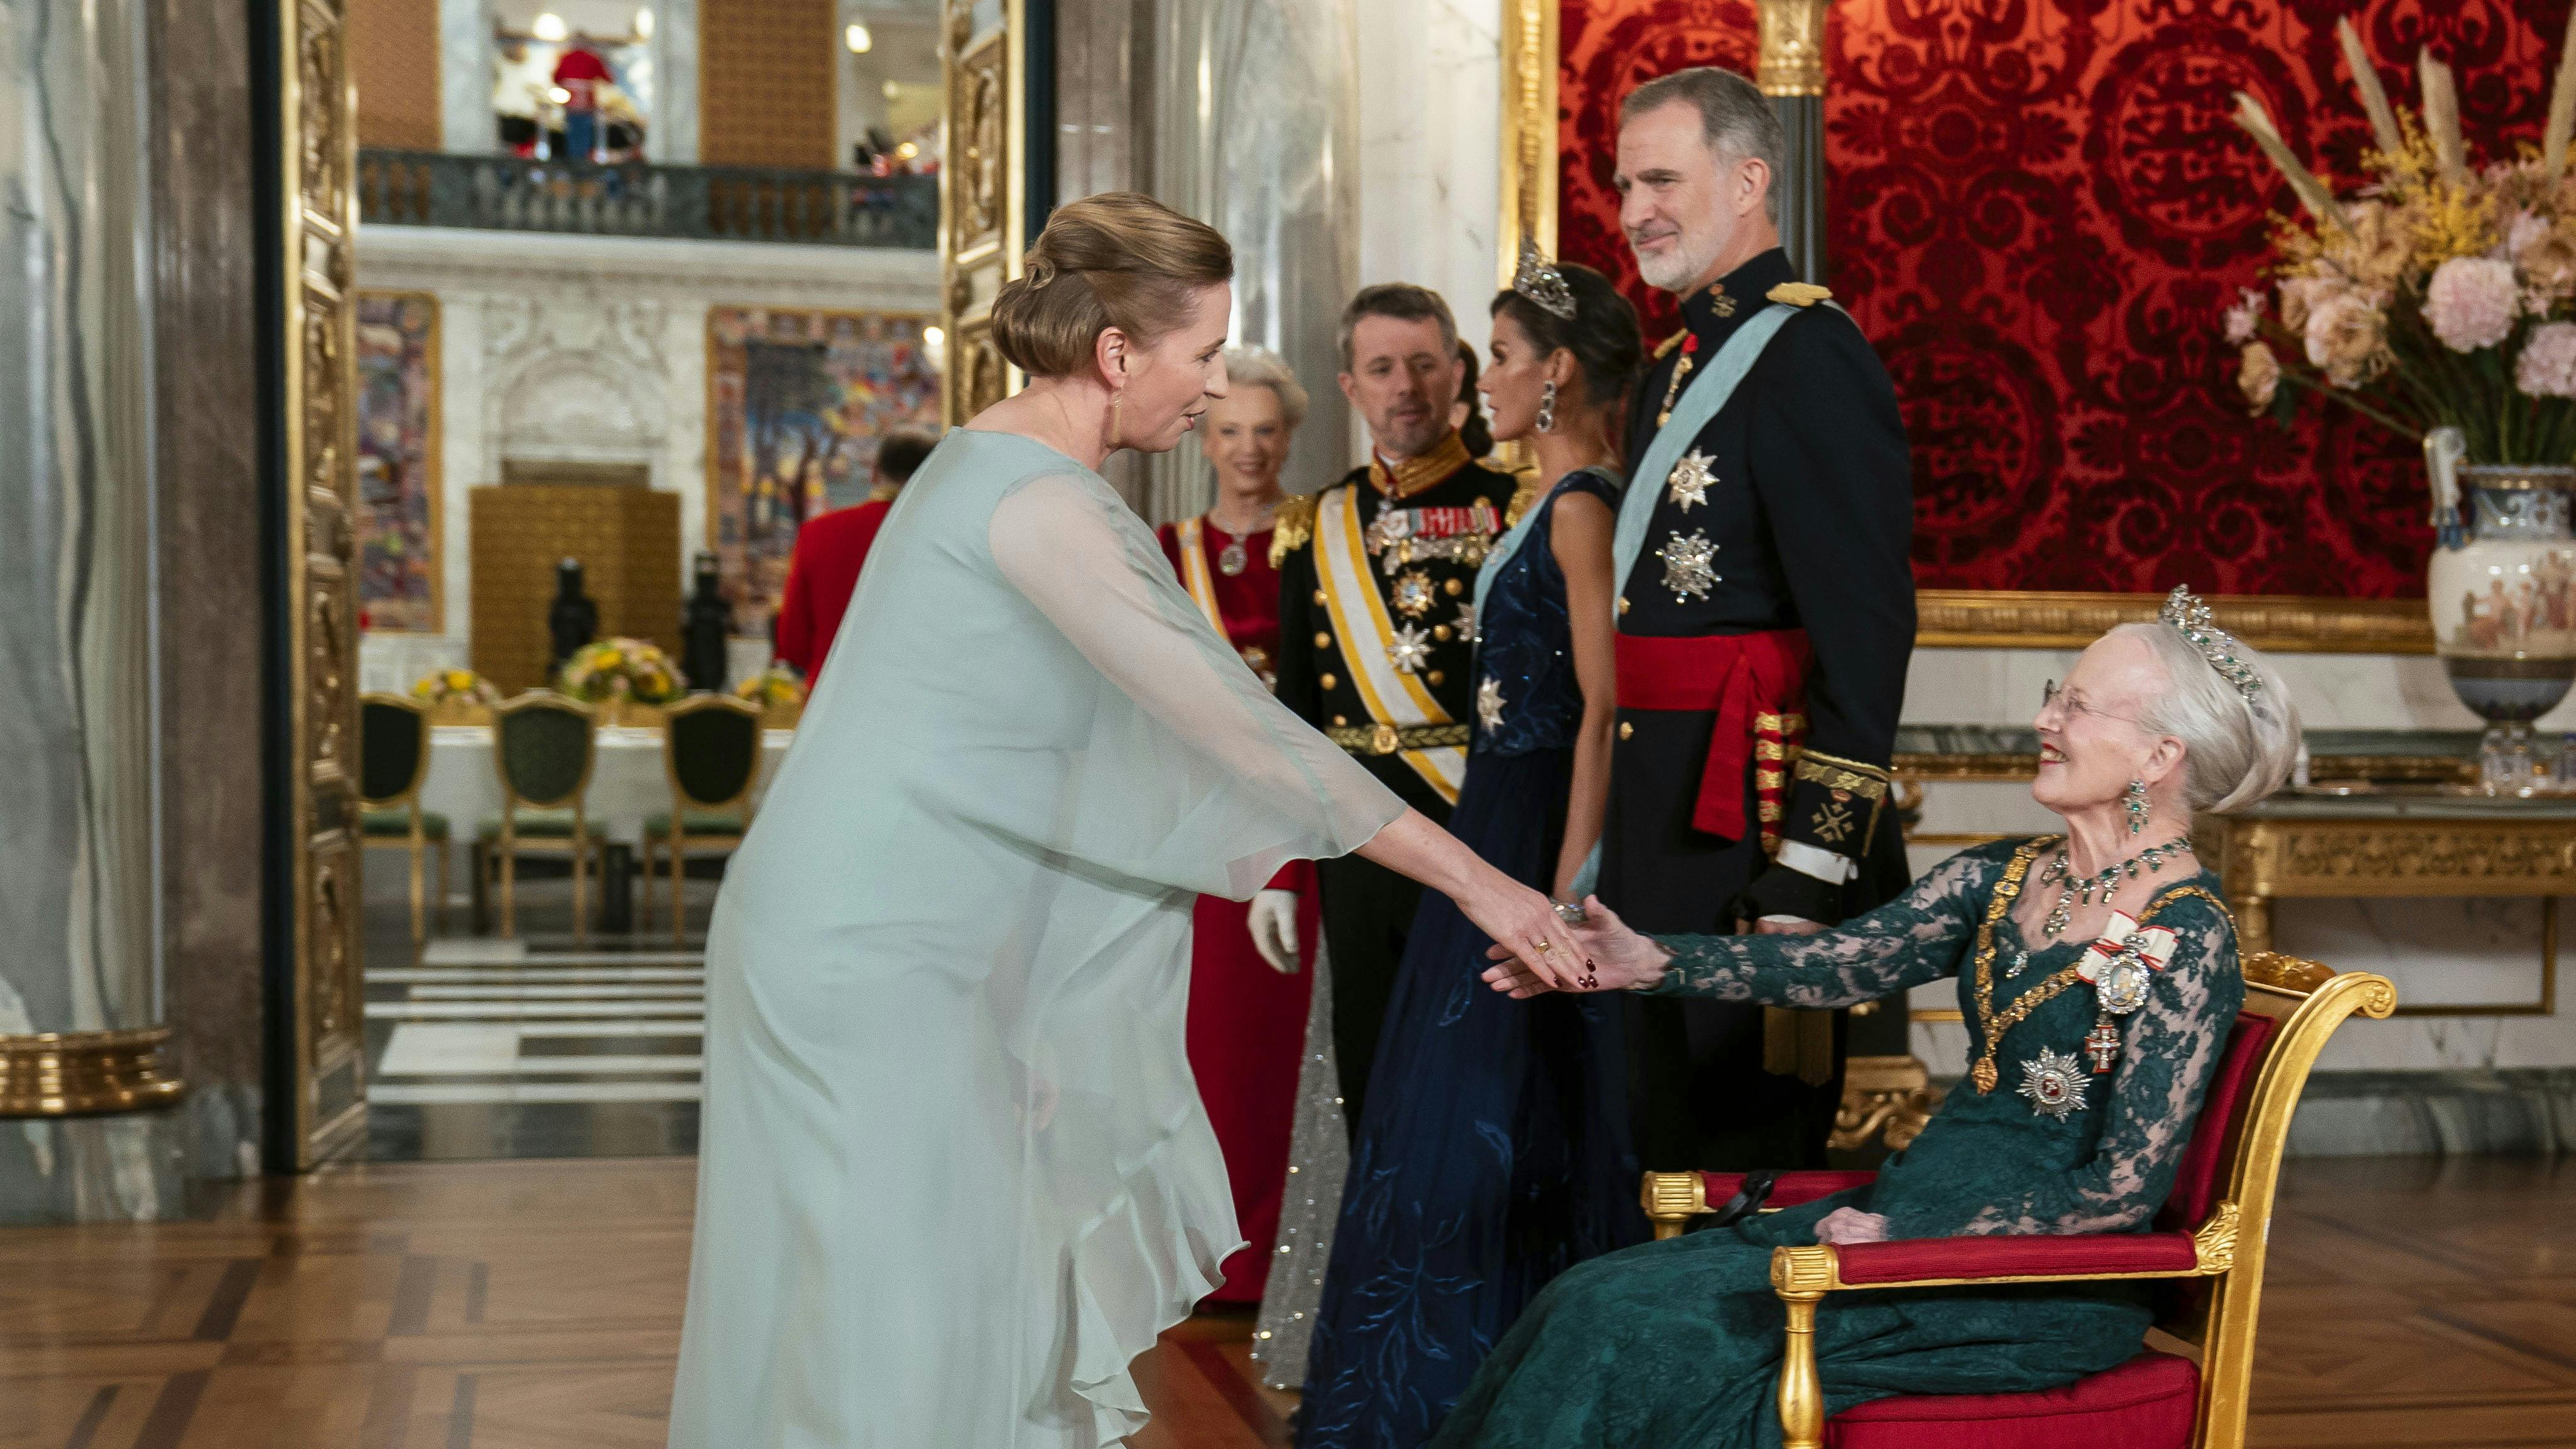 Ups, Mette Frederiksen. Det ville nogle i hvert fald sige, når statsministeren i en samtale med dronning Margrethe har kaldt dronningen for "du". Men den forkerte tiltale er ikke noget som dronning Margrethe har rettet statsministeren på.